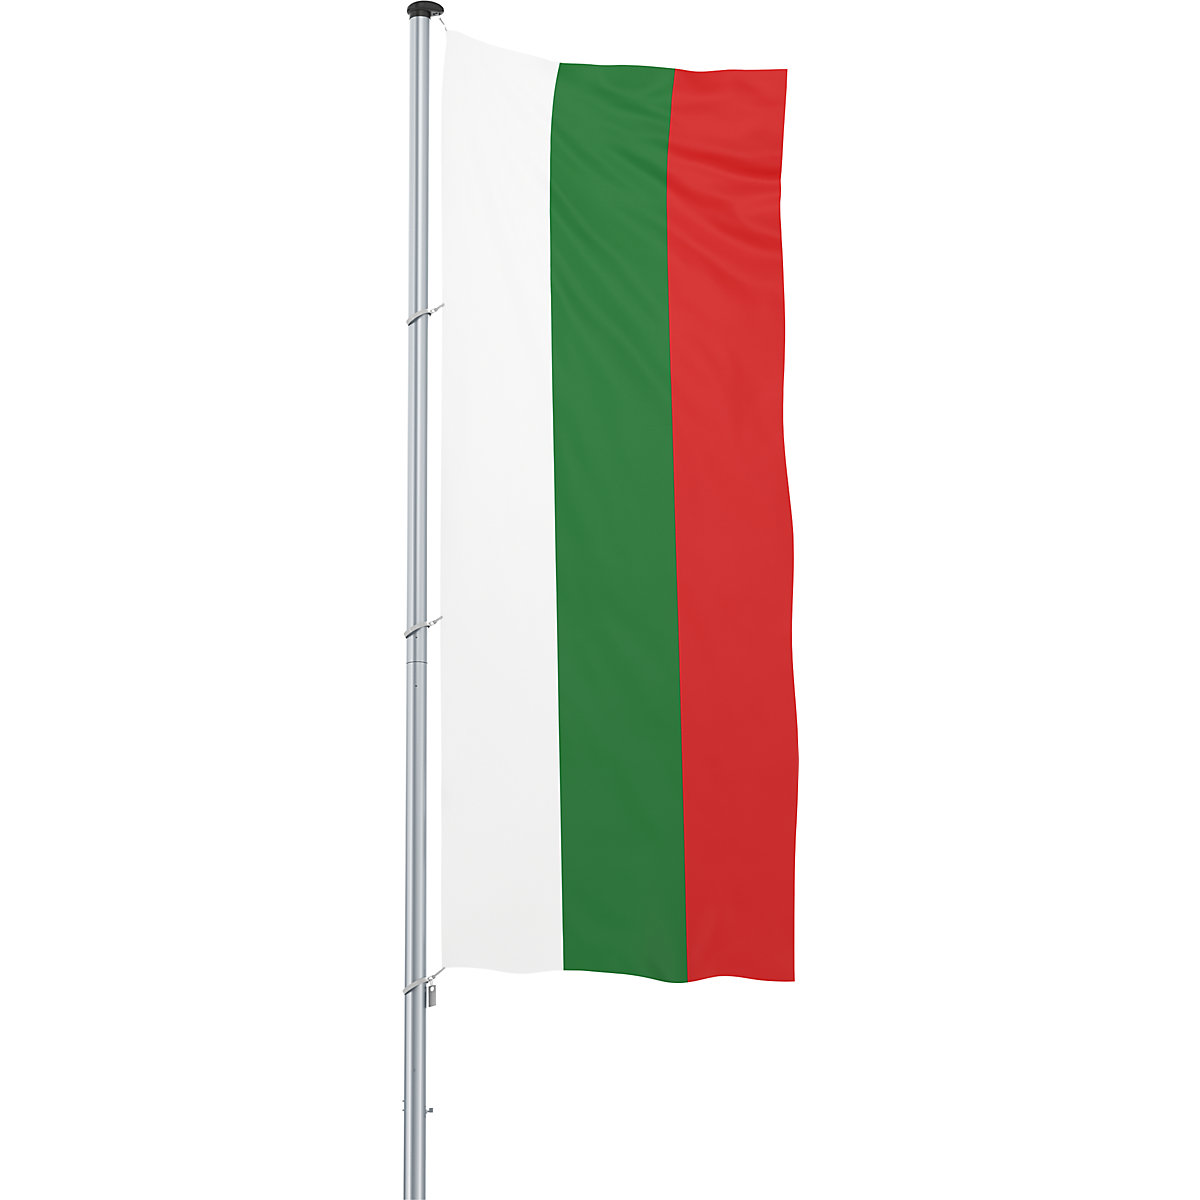 Bandeira para içar/bandeira nacional – Mannus, formato 1,2 x 3 m, Bulgária-15